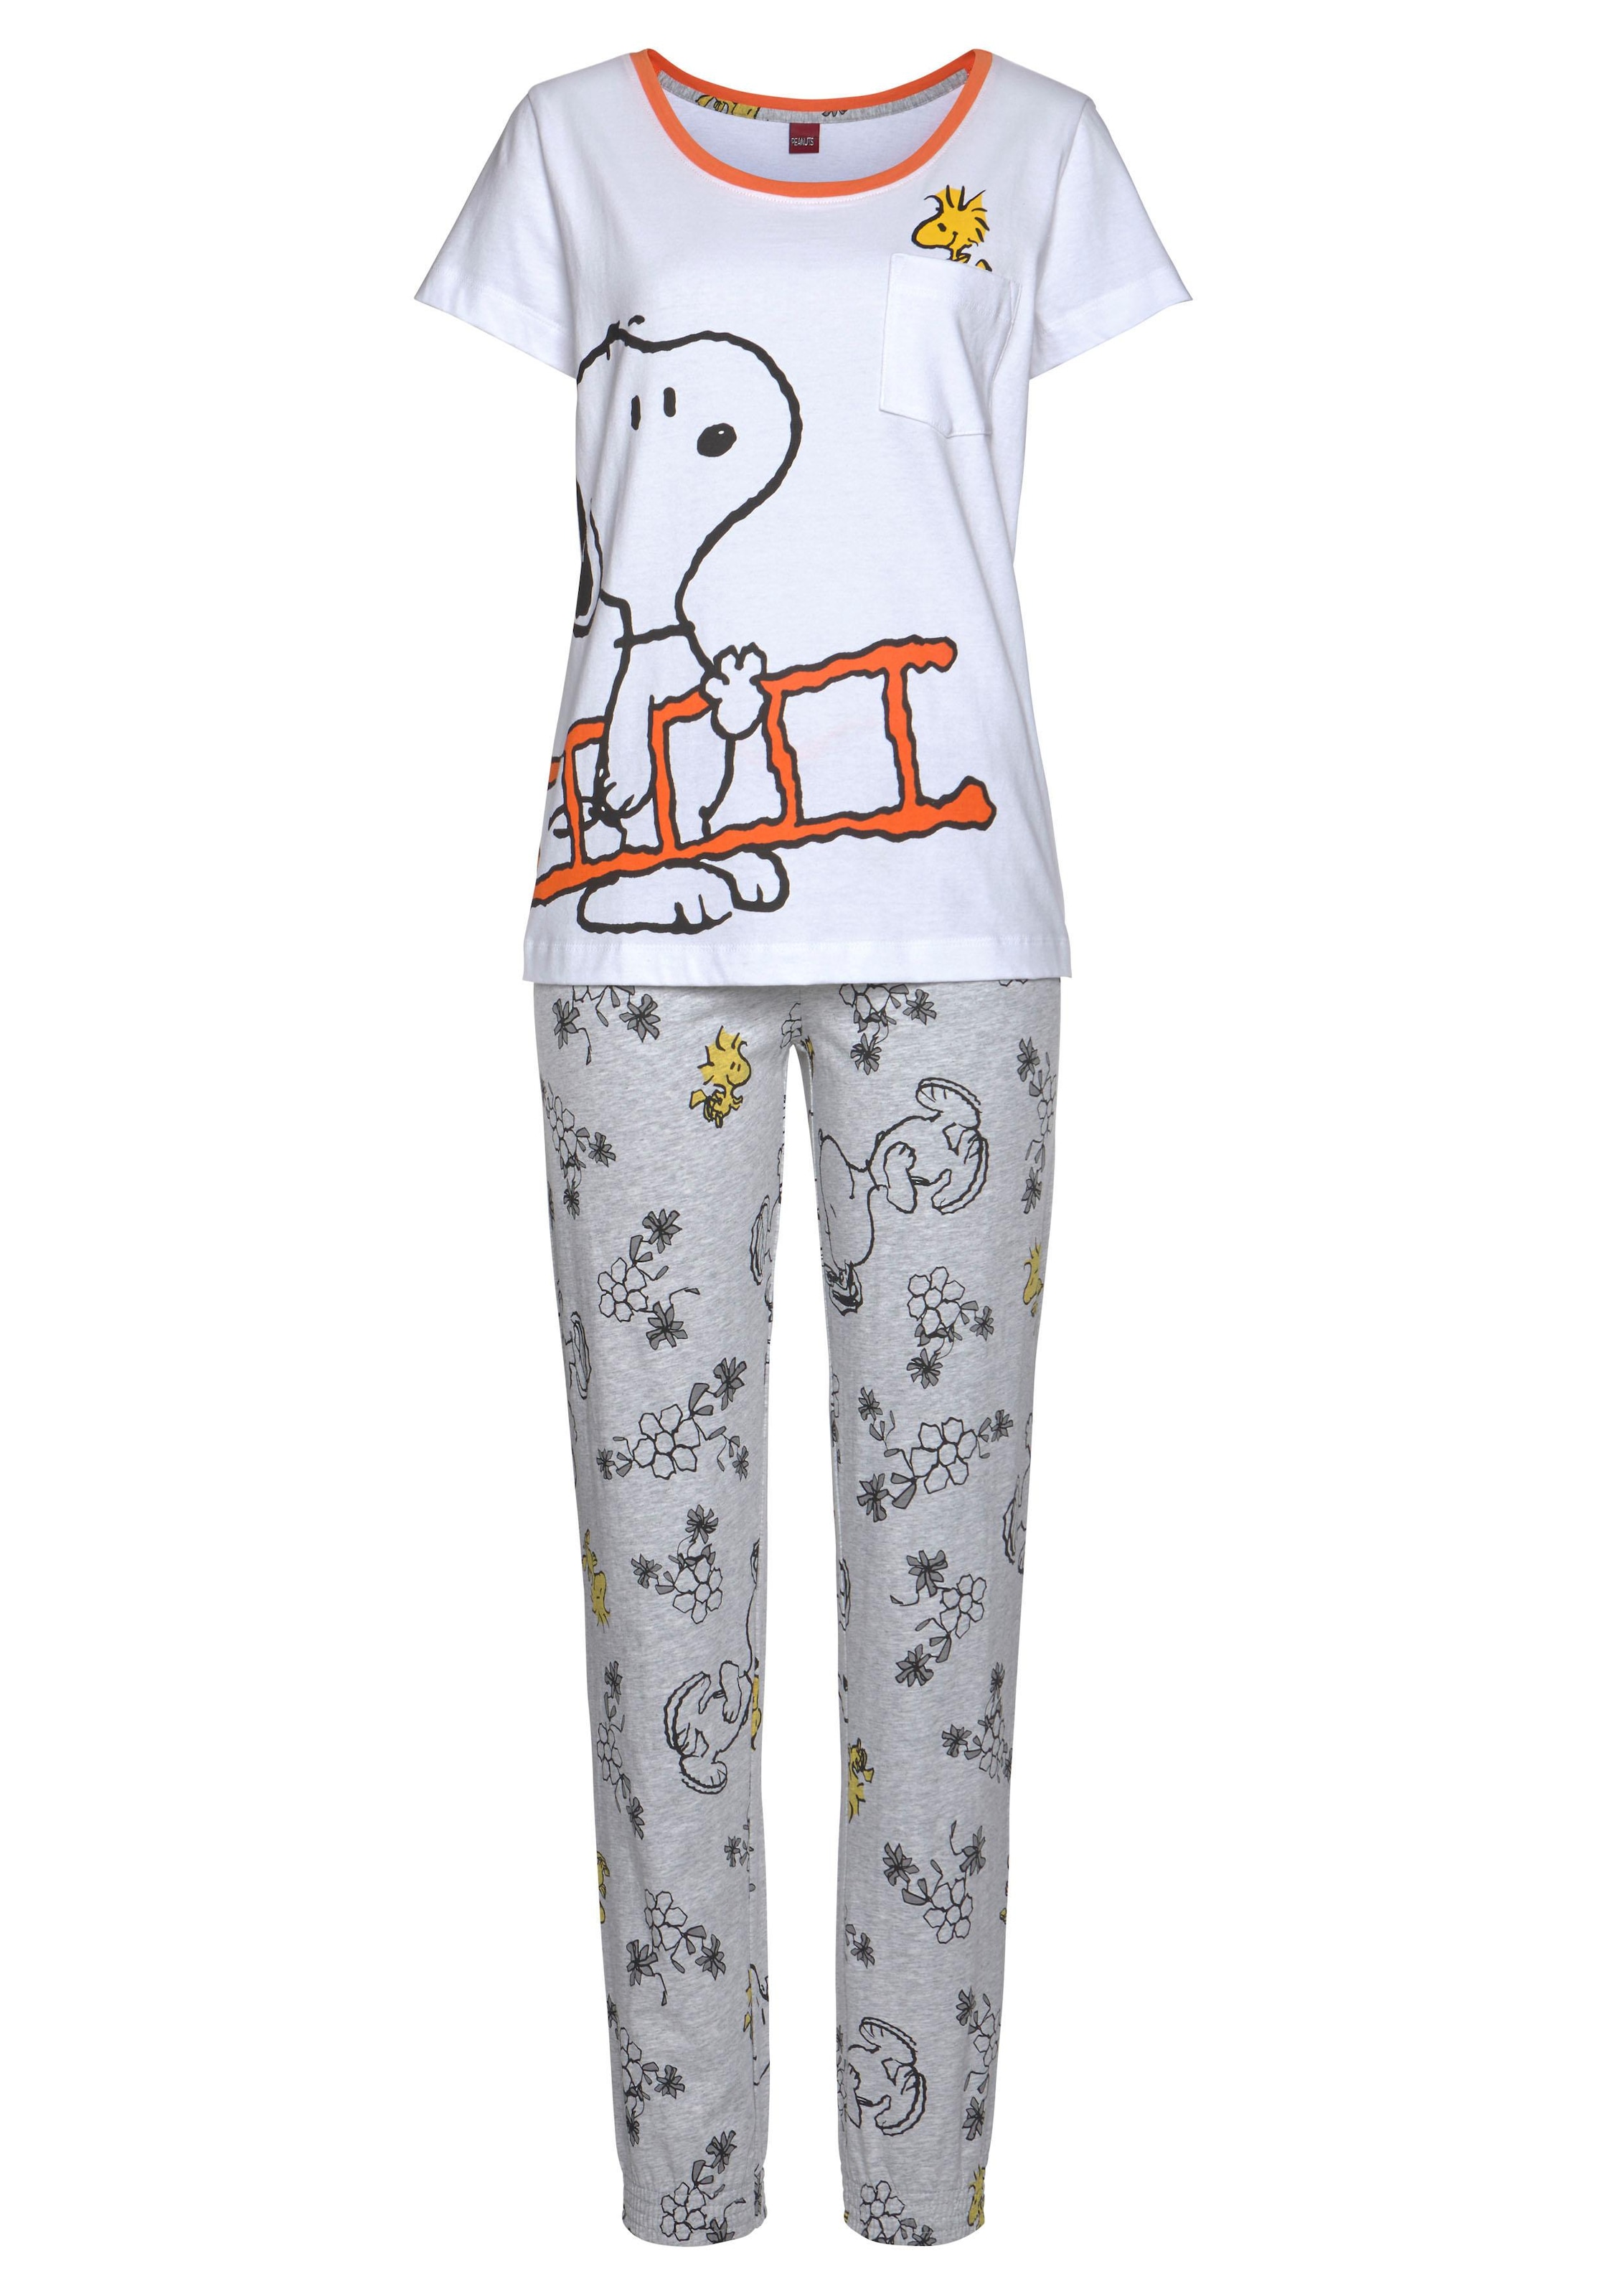 Woodstock Snoopy 1 versandkostenfrei Stück), mit und tlg., Pyjama, auf Peanuts (2 Druck